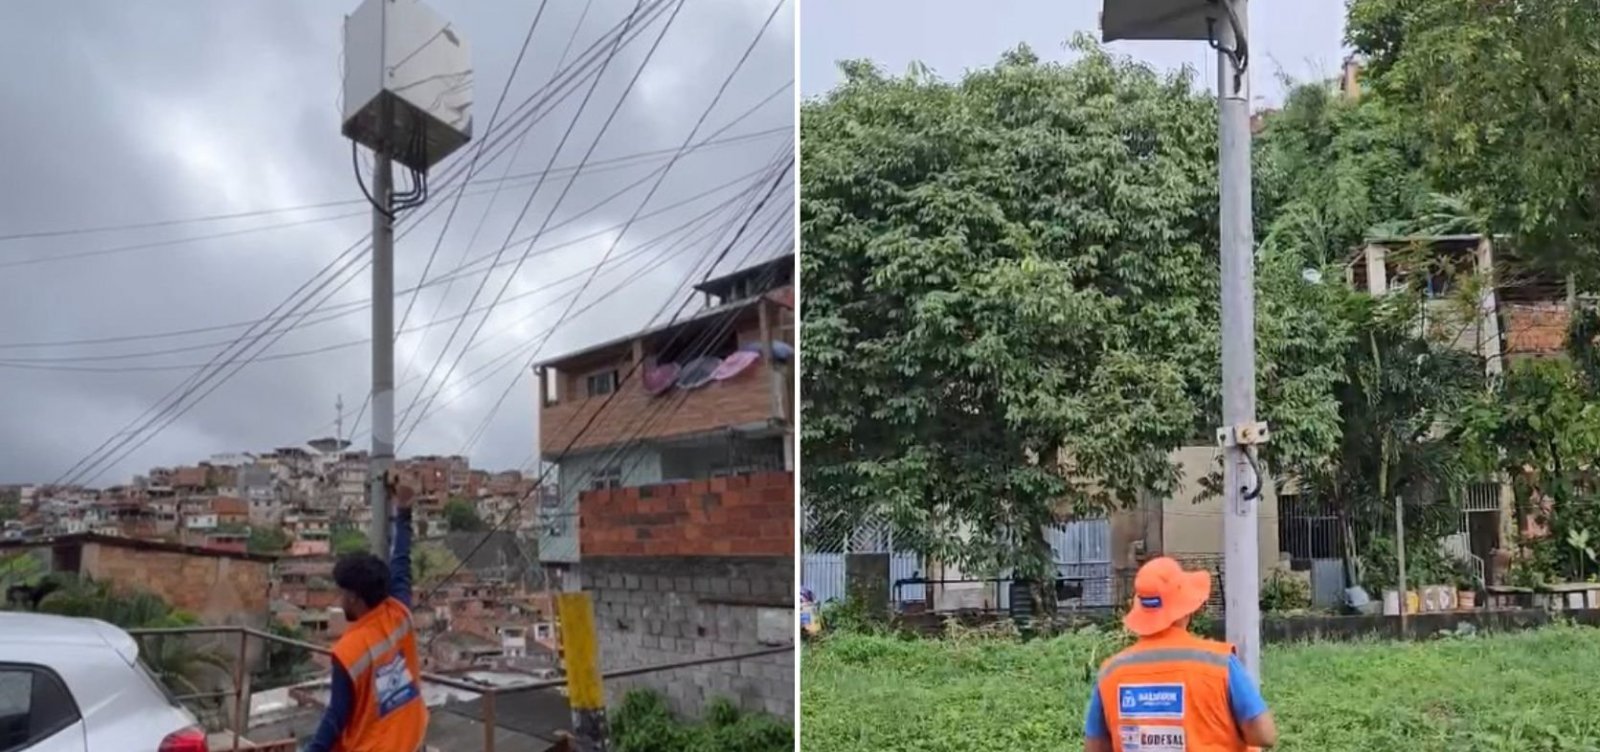 Sirene de alerta é acionada em cinco comunidades de Salvador por conta da chuva